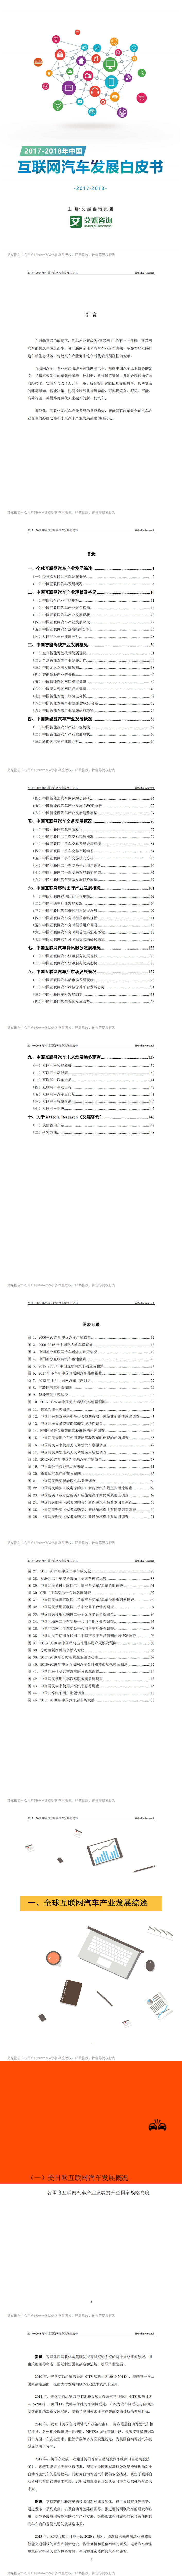 艾媒报告 _ 2017-2018年中国互联网汽车发展白皮书_0.png